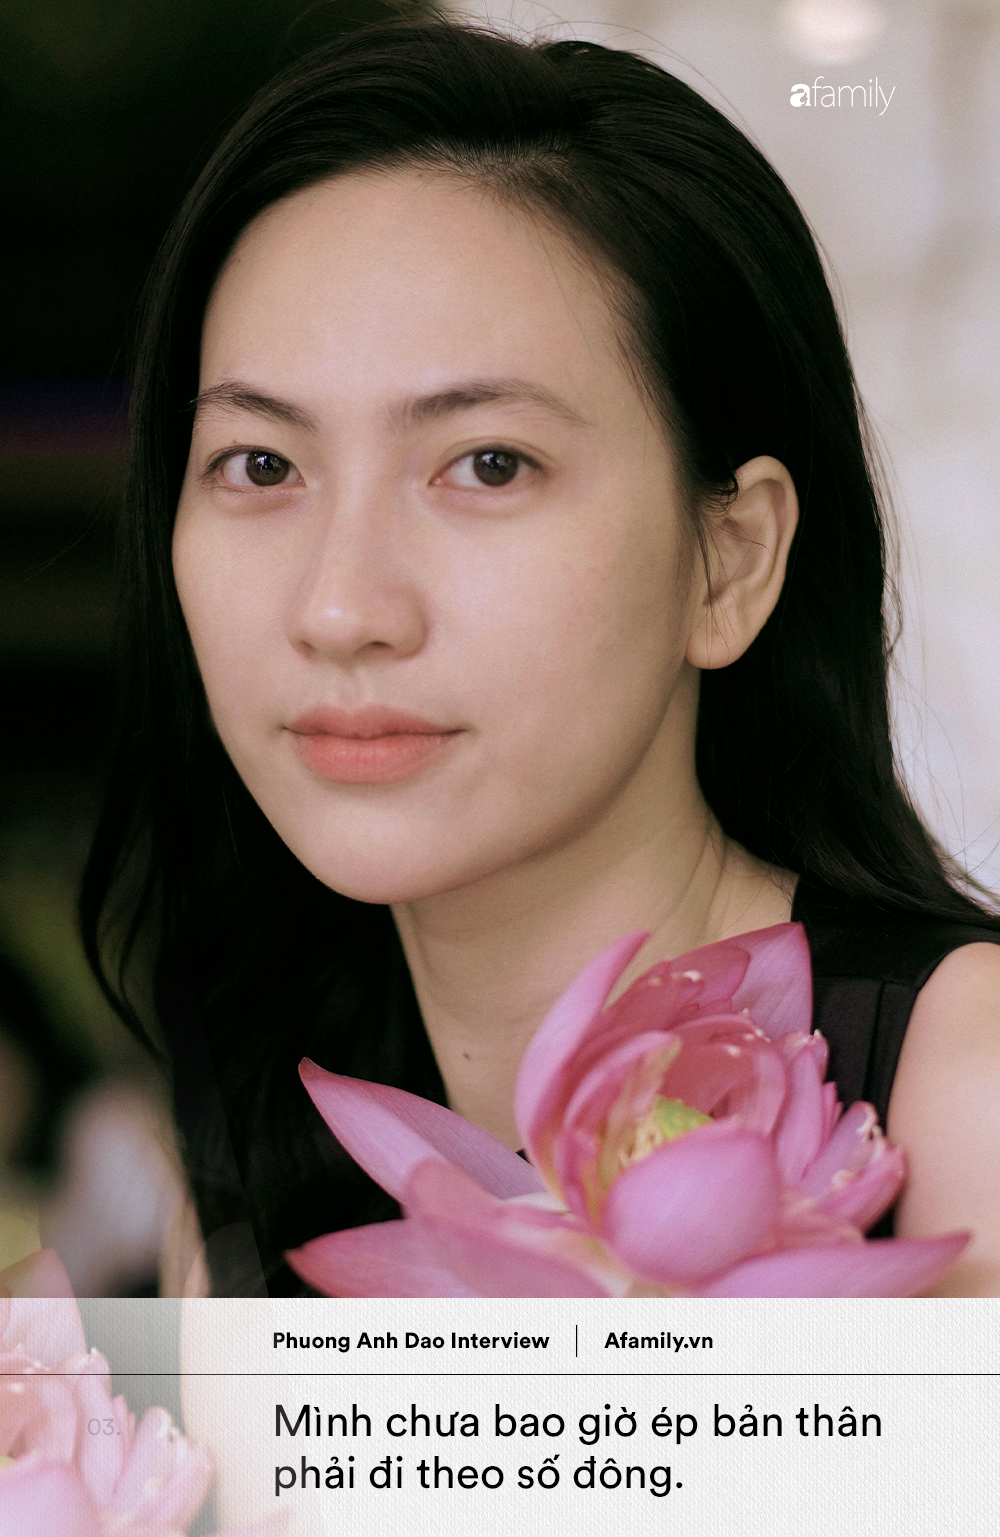 "Ngọc nữ mới của showbiz Việt" Phương Anh Đào: 18 tuổi đã muốn lấy chồng, khuyên phụ nữ đừng làm đẹp để phục vụ đàn ông - Ảnh 2.